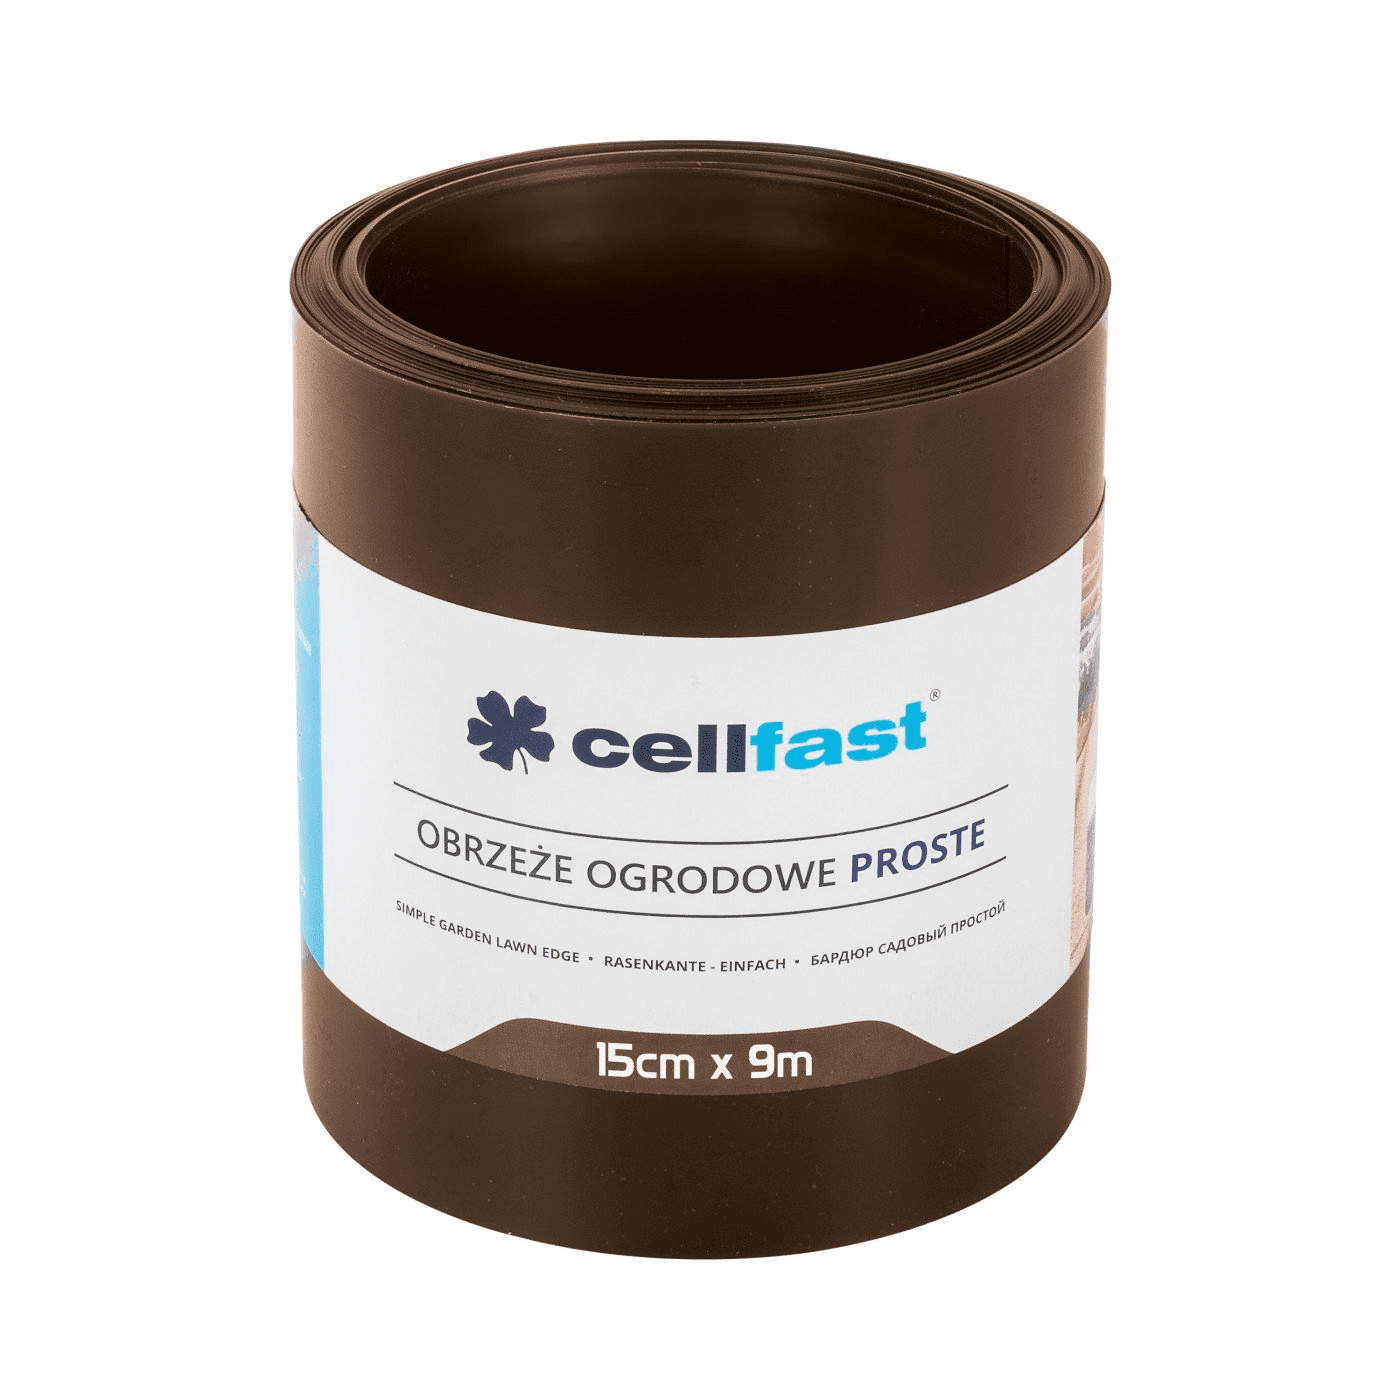 Cellfast Obrzeże Ogrodowe Płaskie 15cm x 9m Brązowe